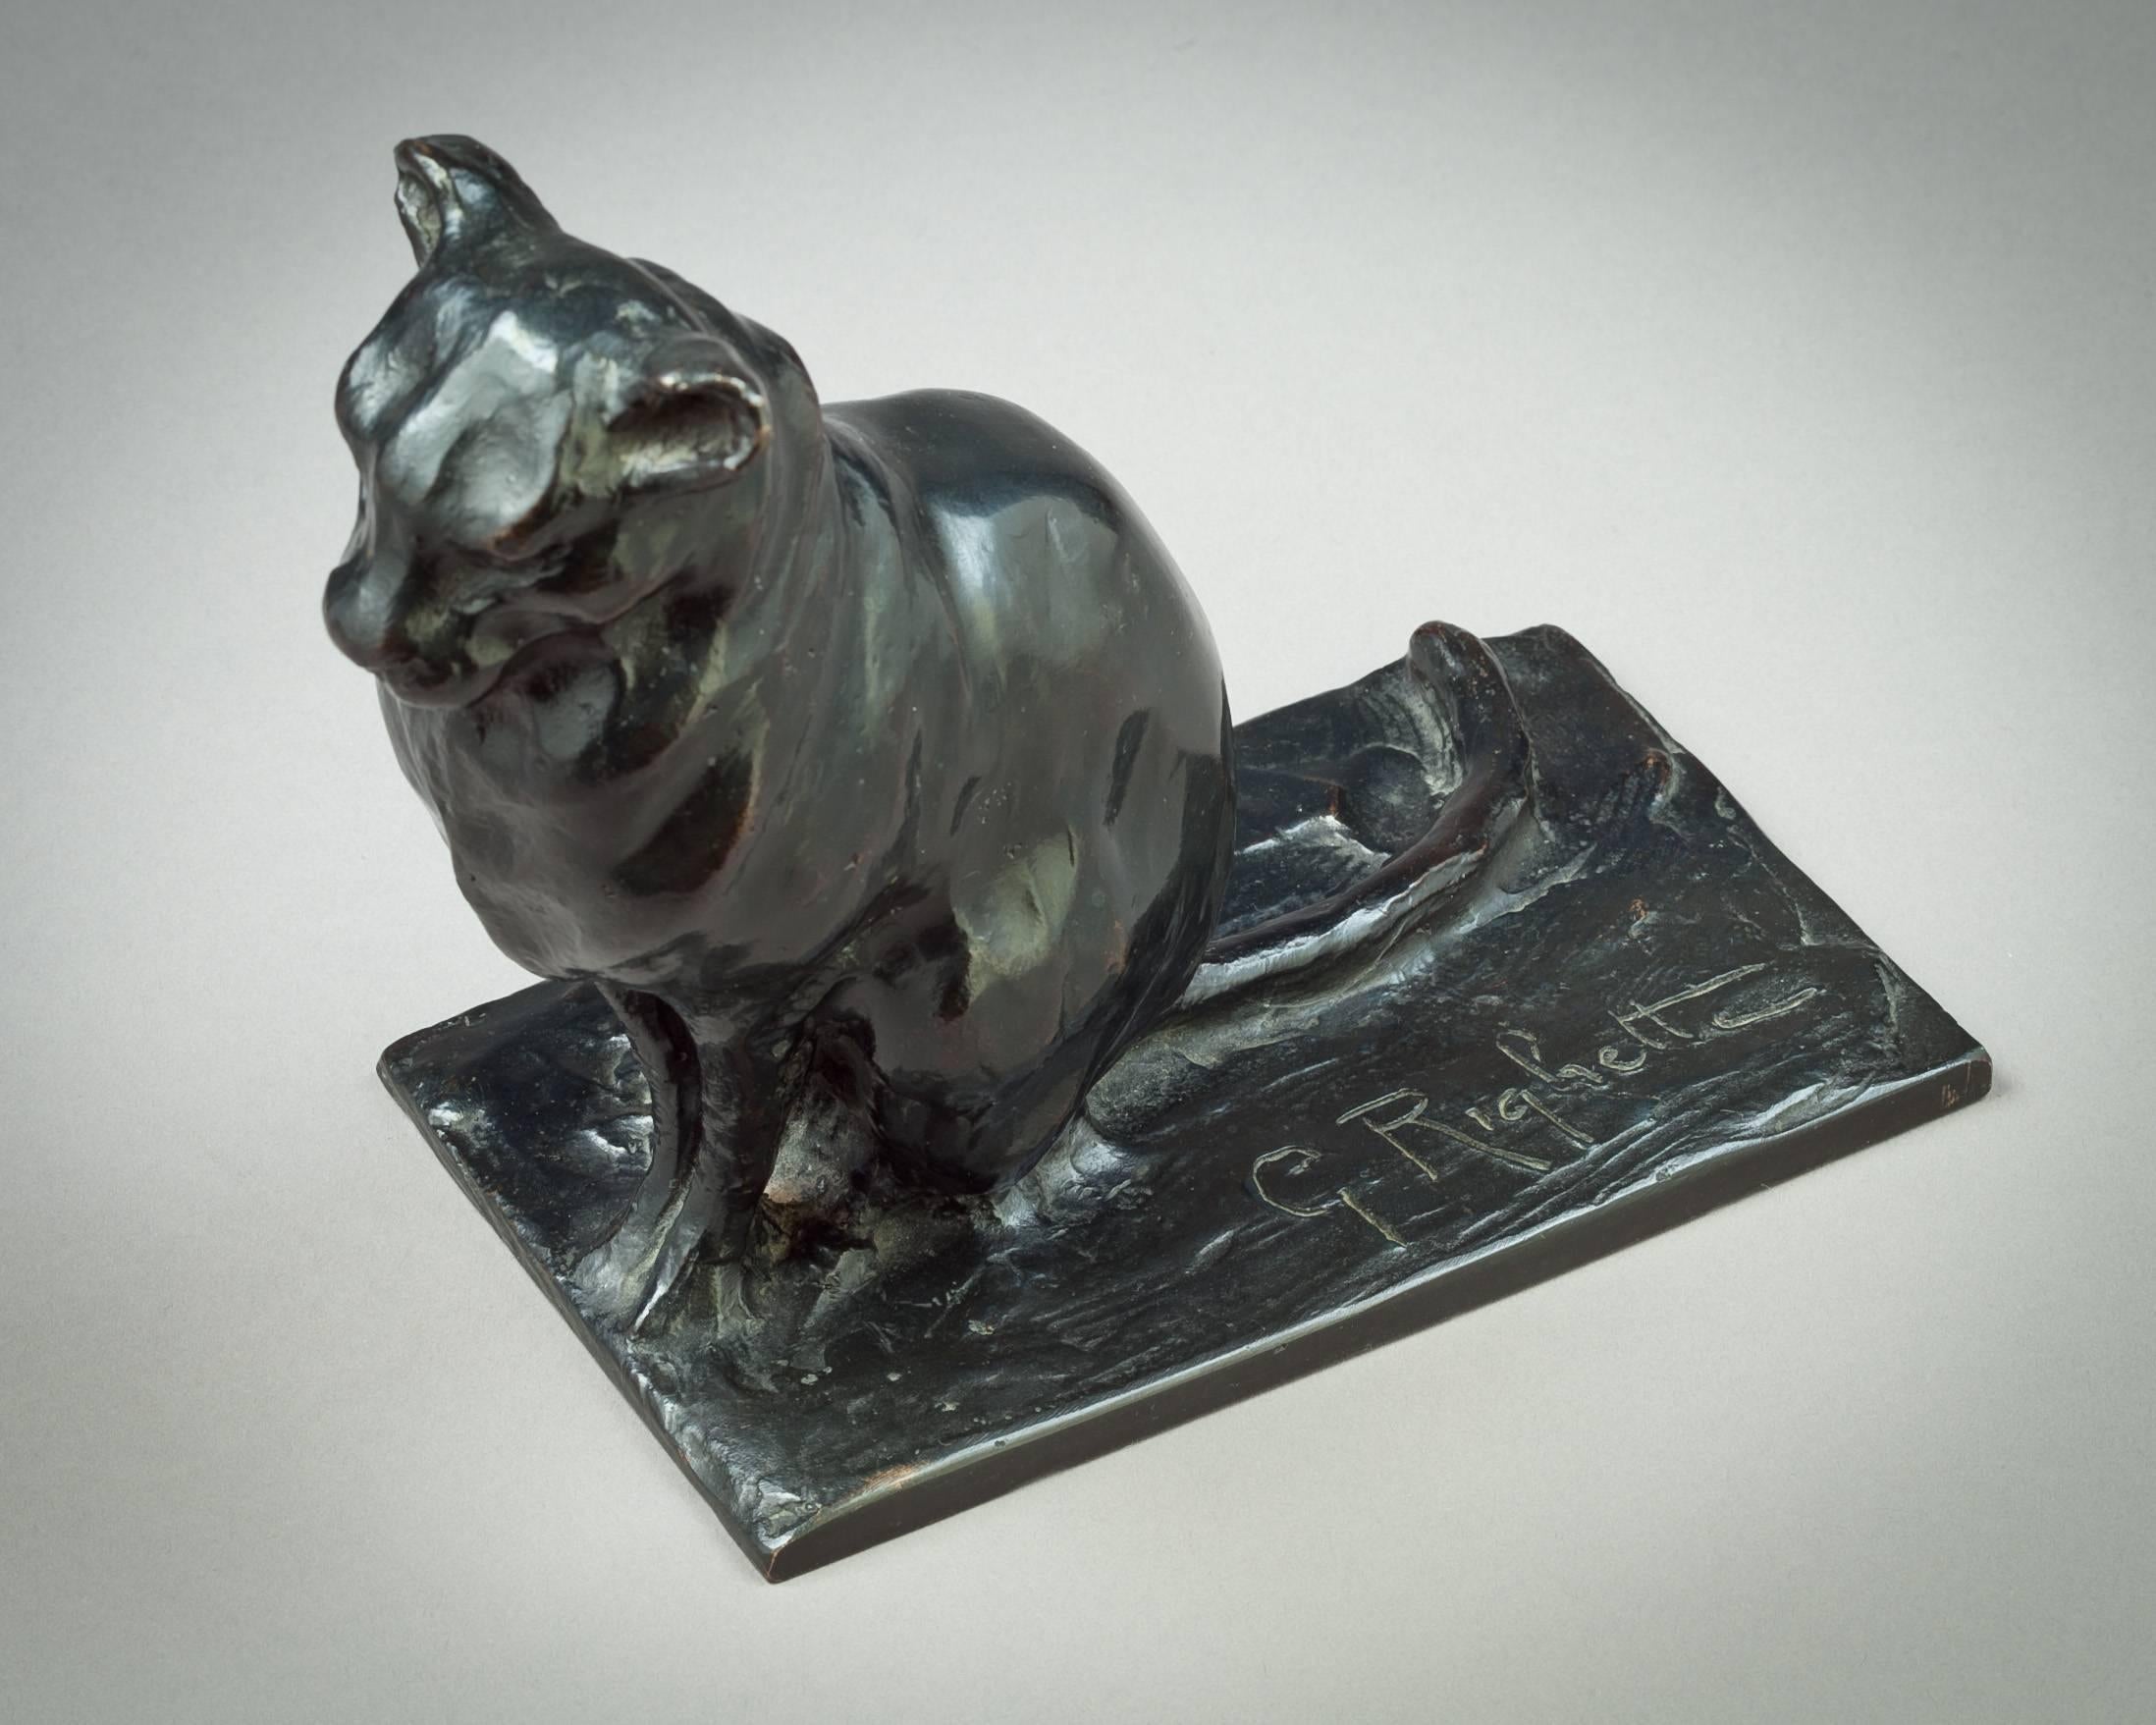 Bronze cat sculpture, Guido Righetti, circa 1925.

Engraved G. Righetti.